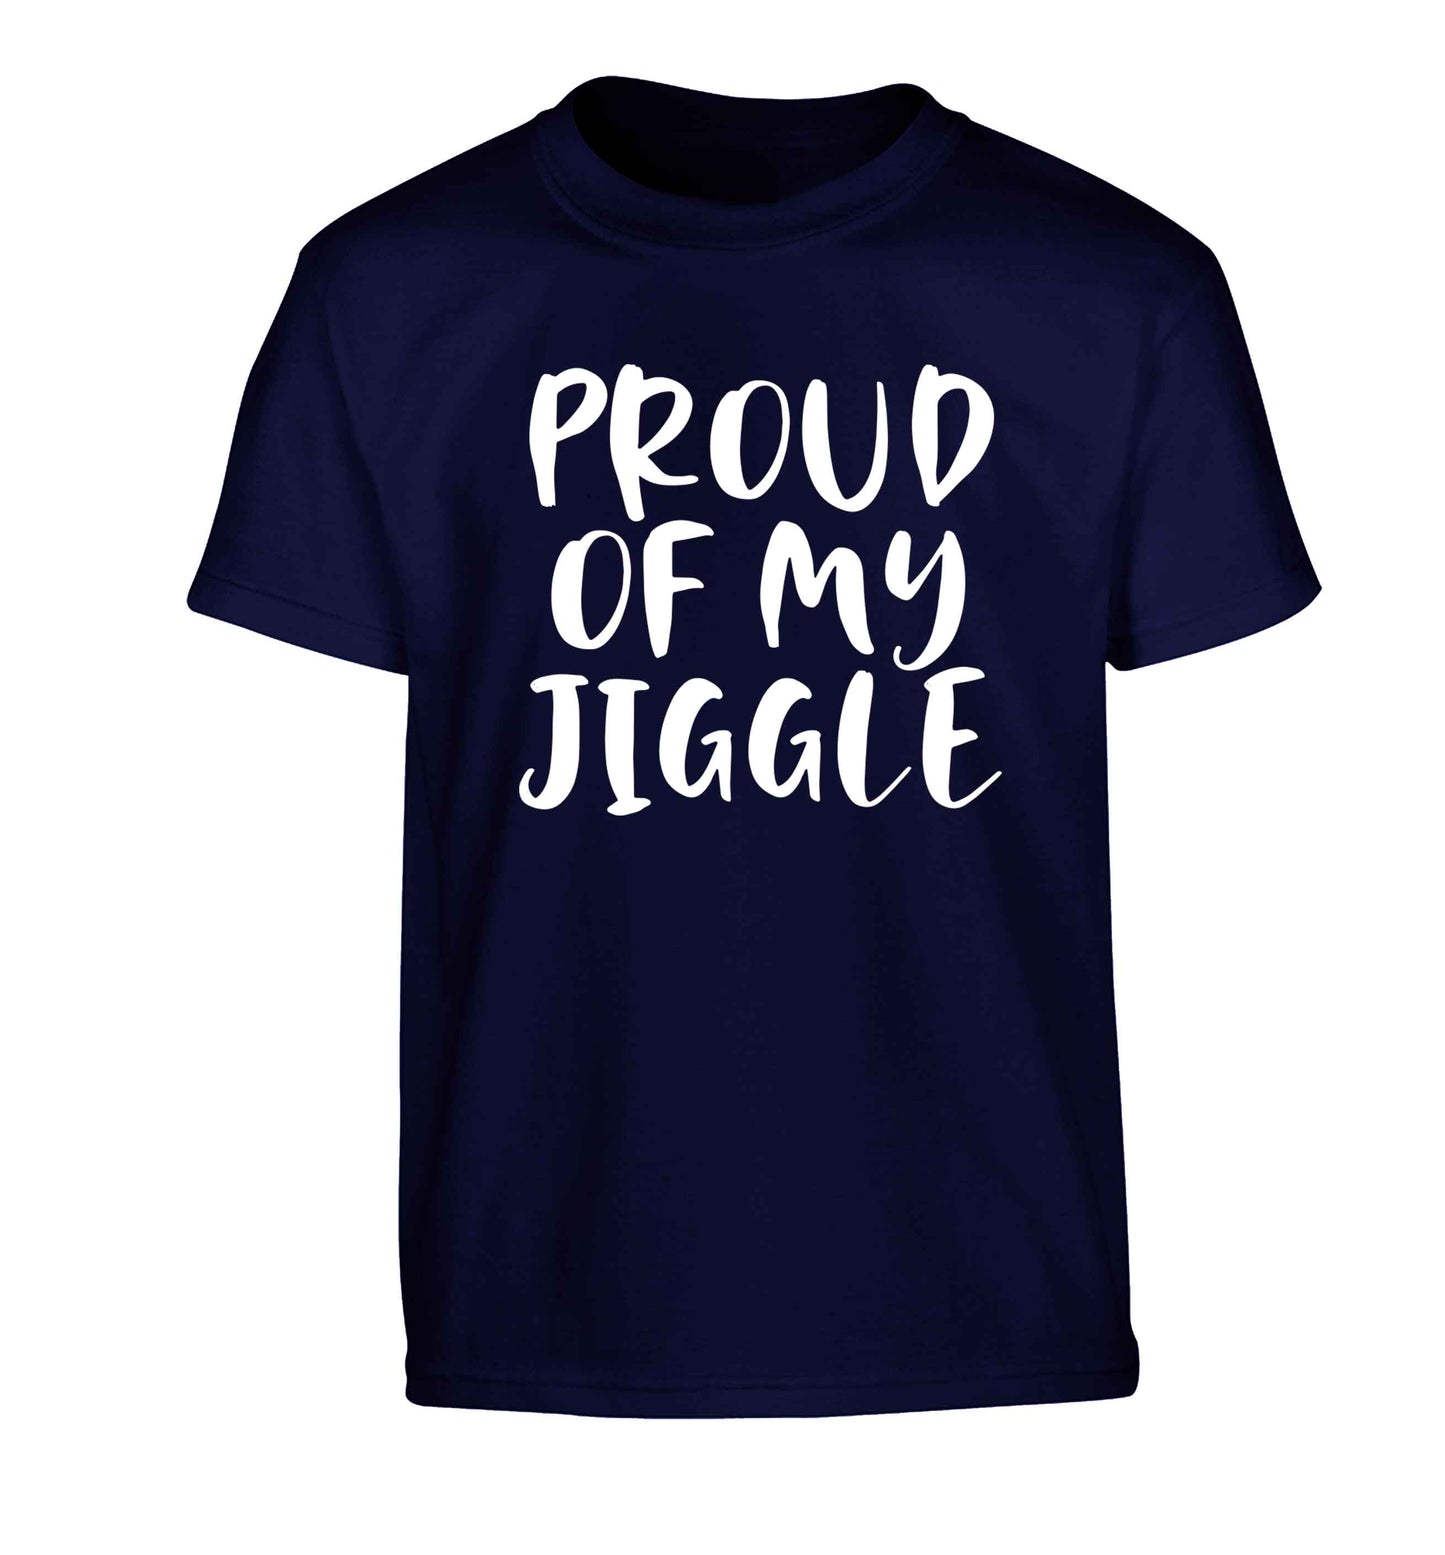 Proud of my jiggle Children's navy Tshirt 12-13 Years